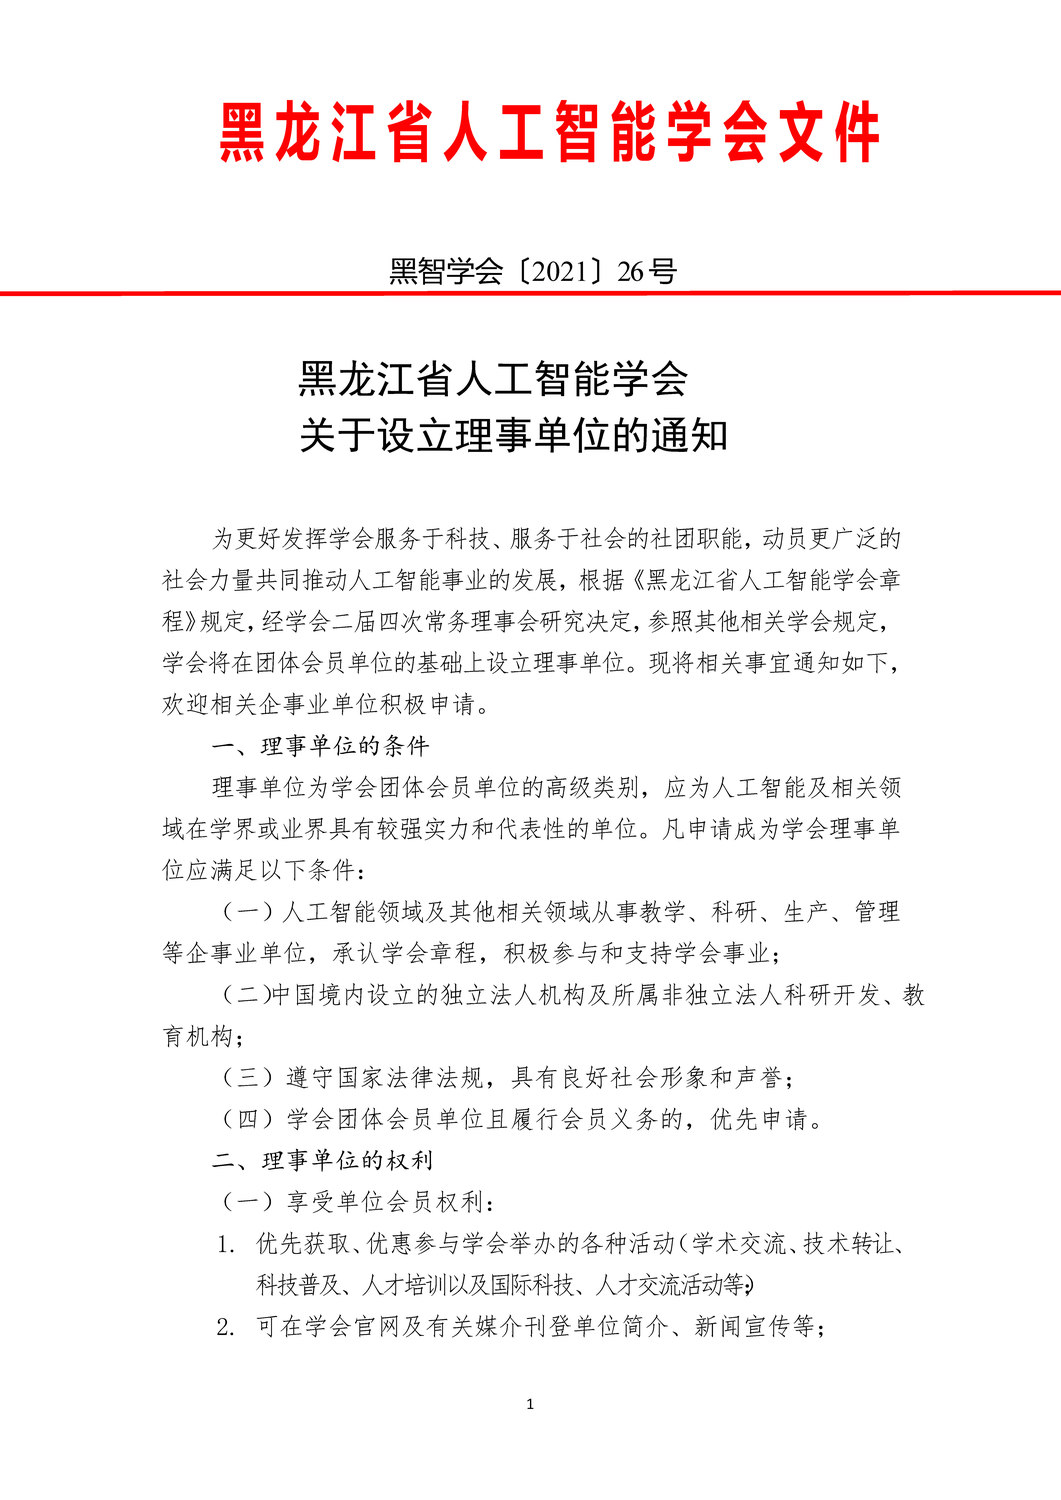 2021年黑龙江省人工智能学会申请理事会员单位的通知_页面_1.jpg